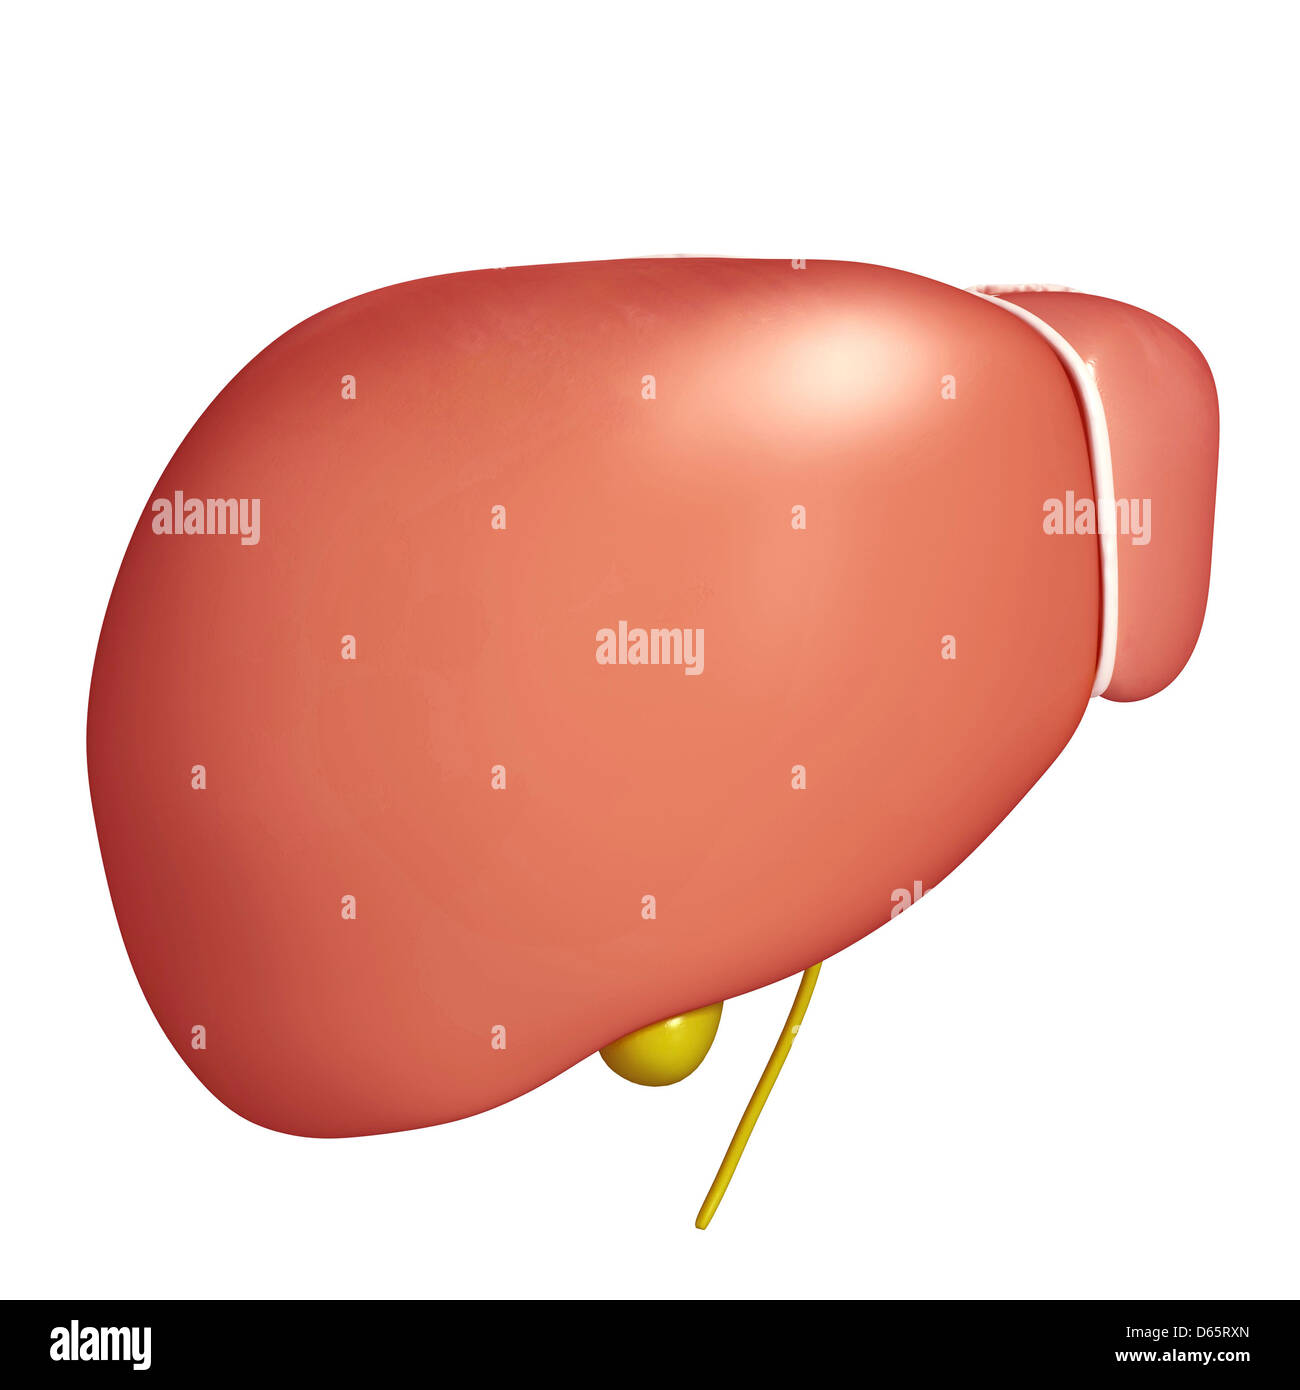 Hígado sano, ilustraciones Foto de stock